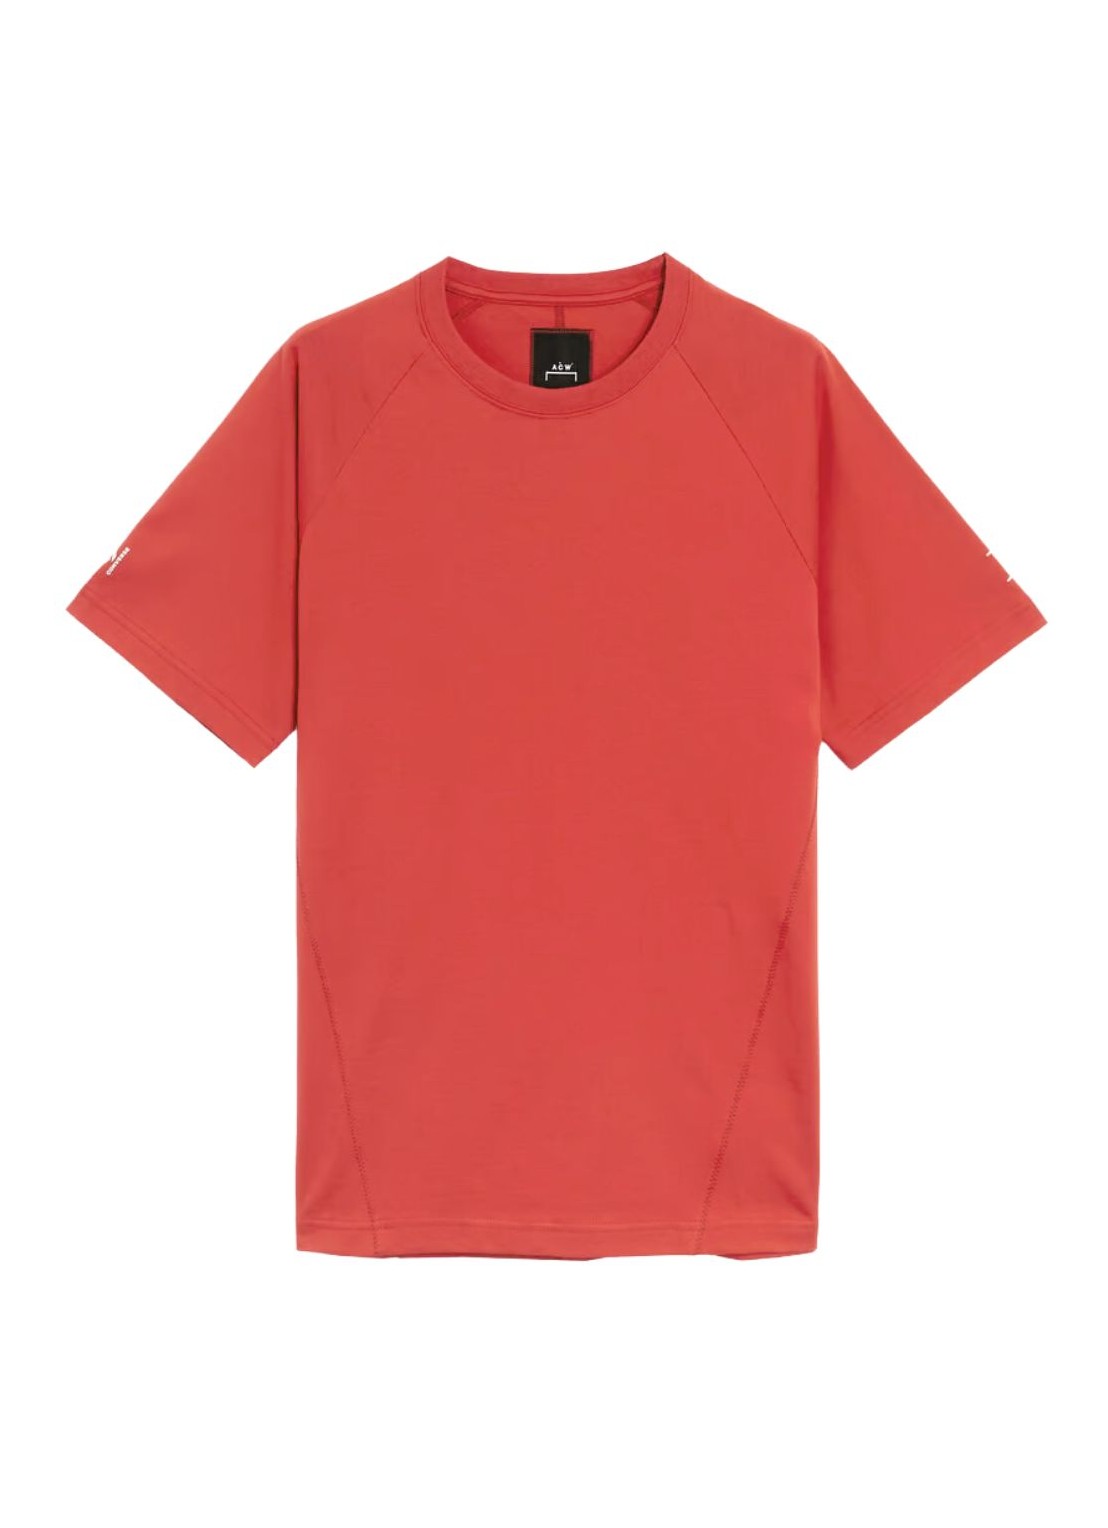 Camiseta converse x a-cold-wall t-shirt mantee - 10026876 a01 talla M
 